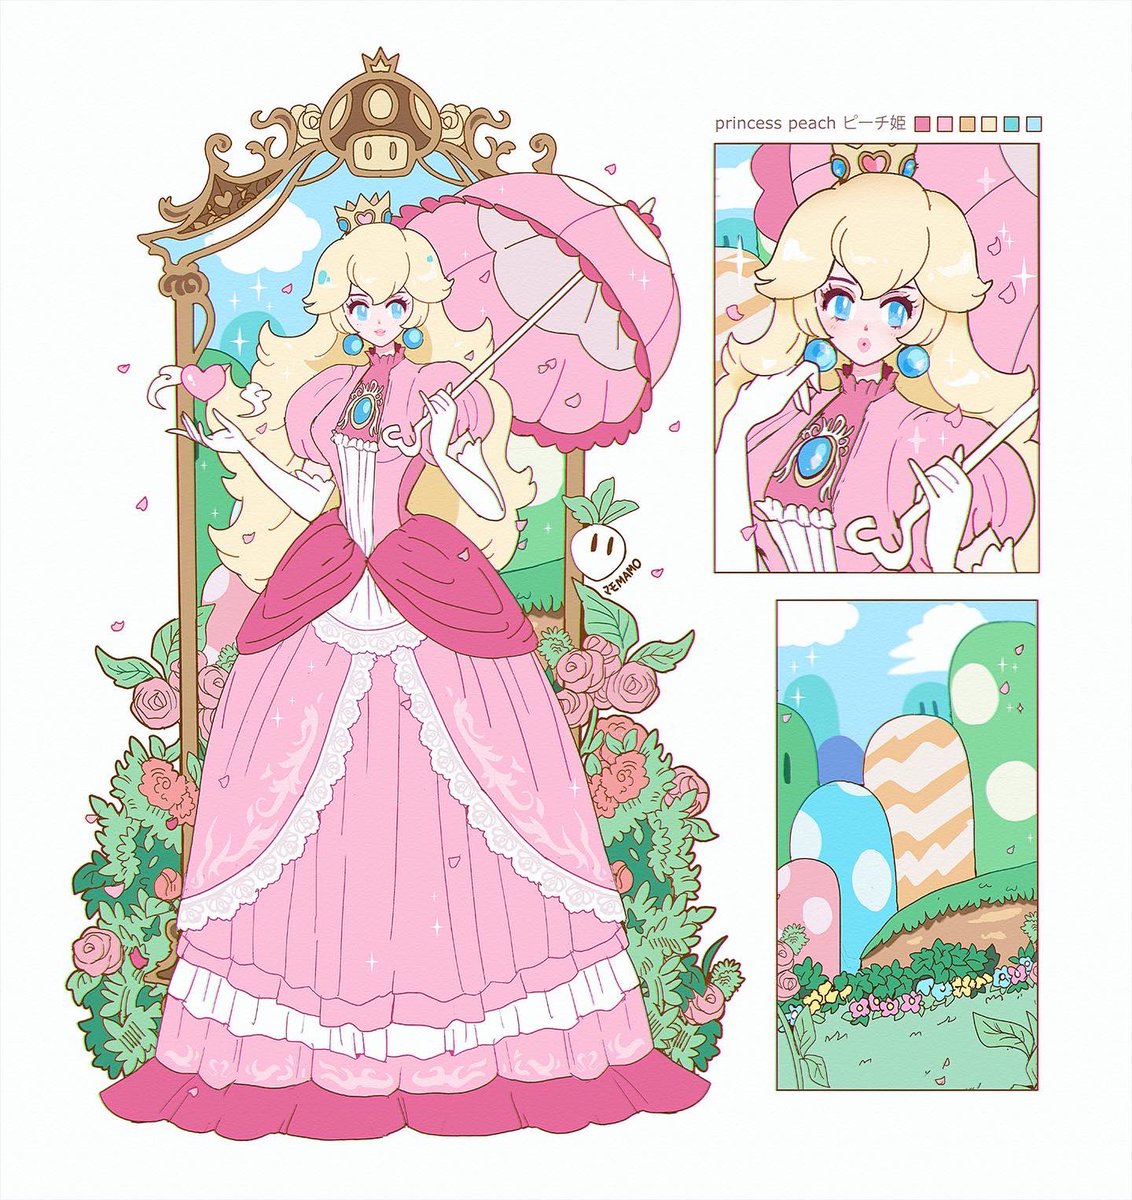 ピーチ姫 「princess peach  」|Mamo マモのイラスト